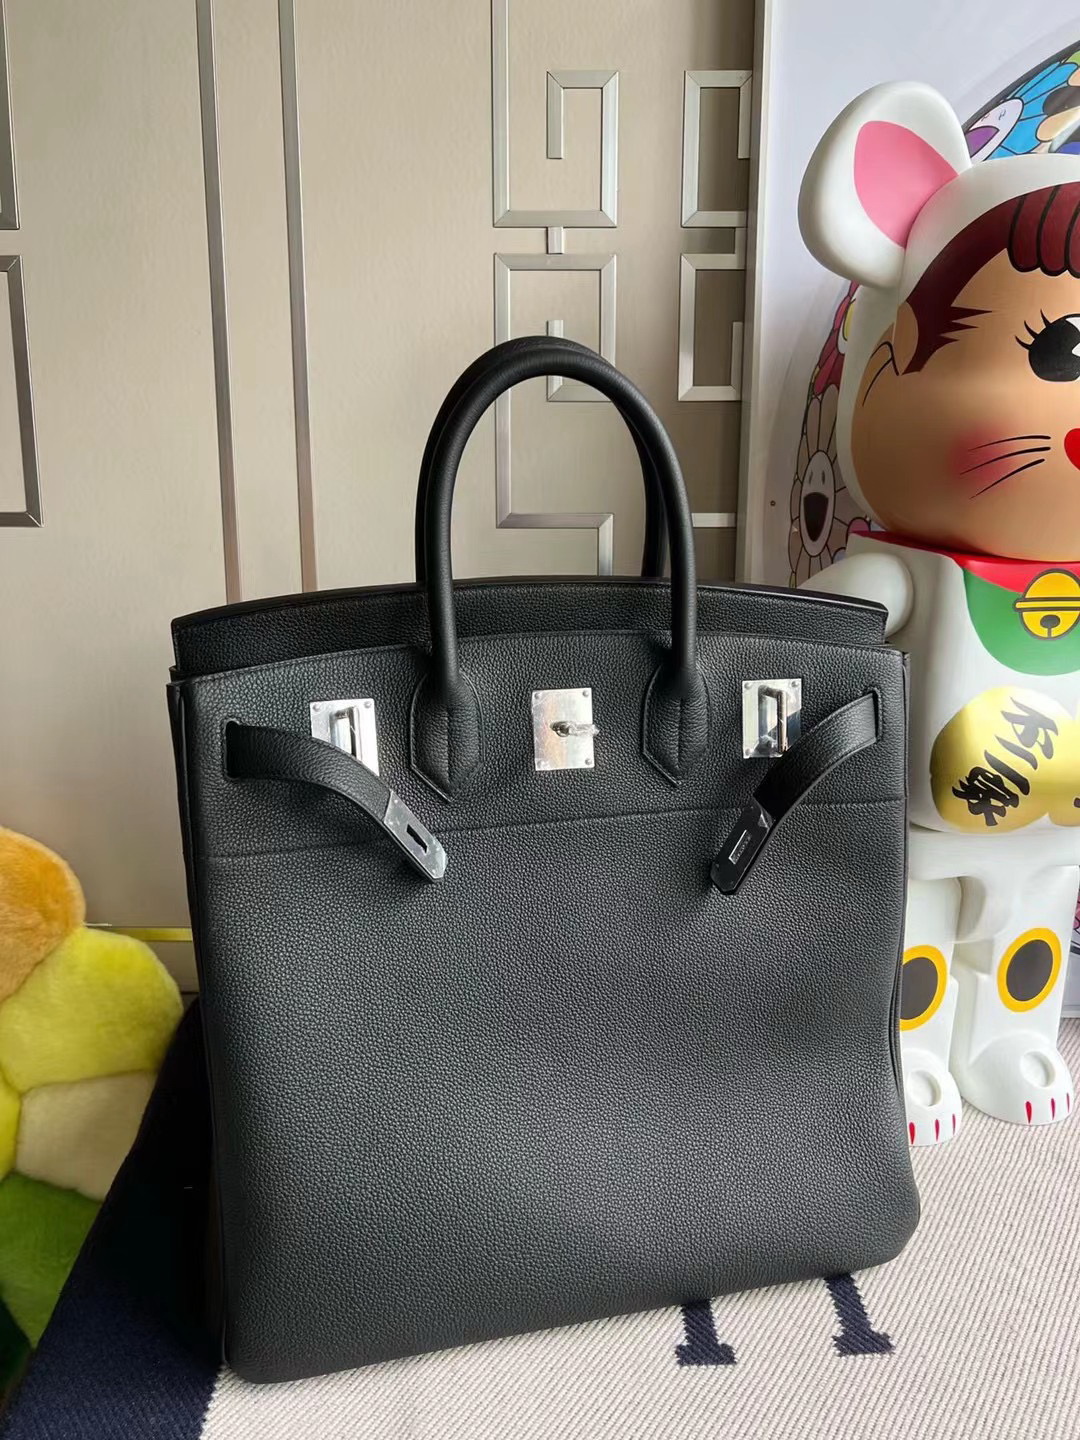 Clsaaic Hot Sell Woman Bag Organizer Tasarımcı Büyük Boy Hac UNISEX 40 cm Sipariş vermek için Make Günlük Çantalar Seyahat Etme